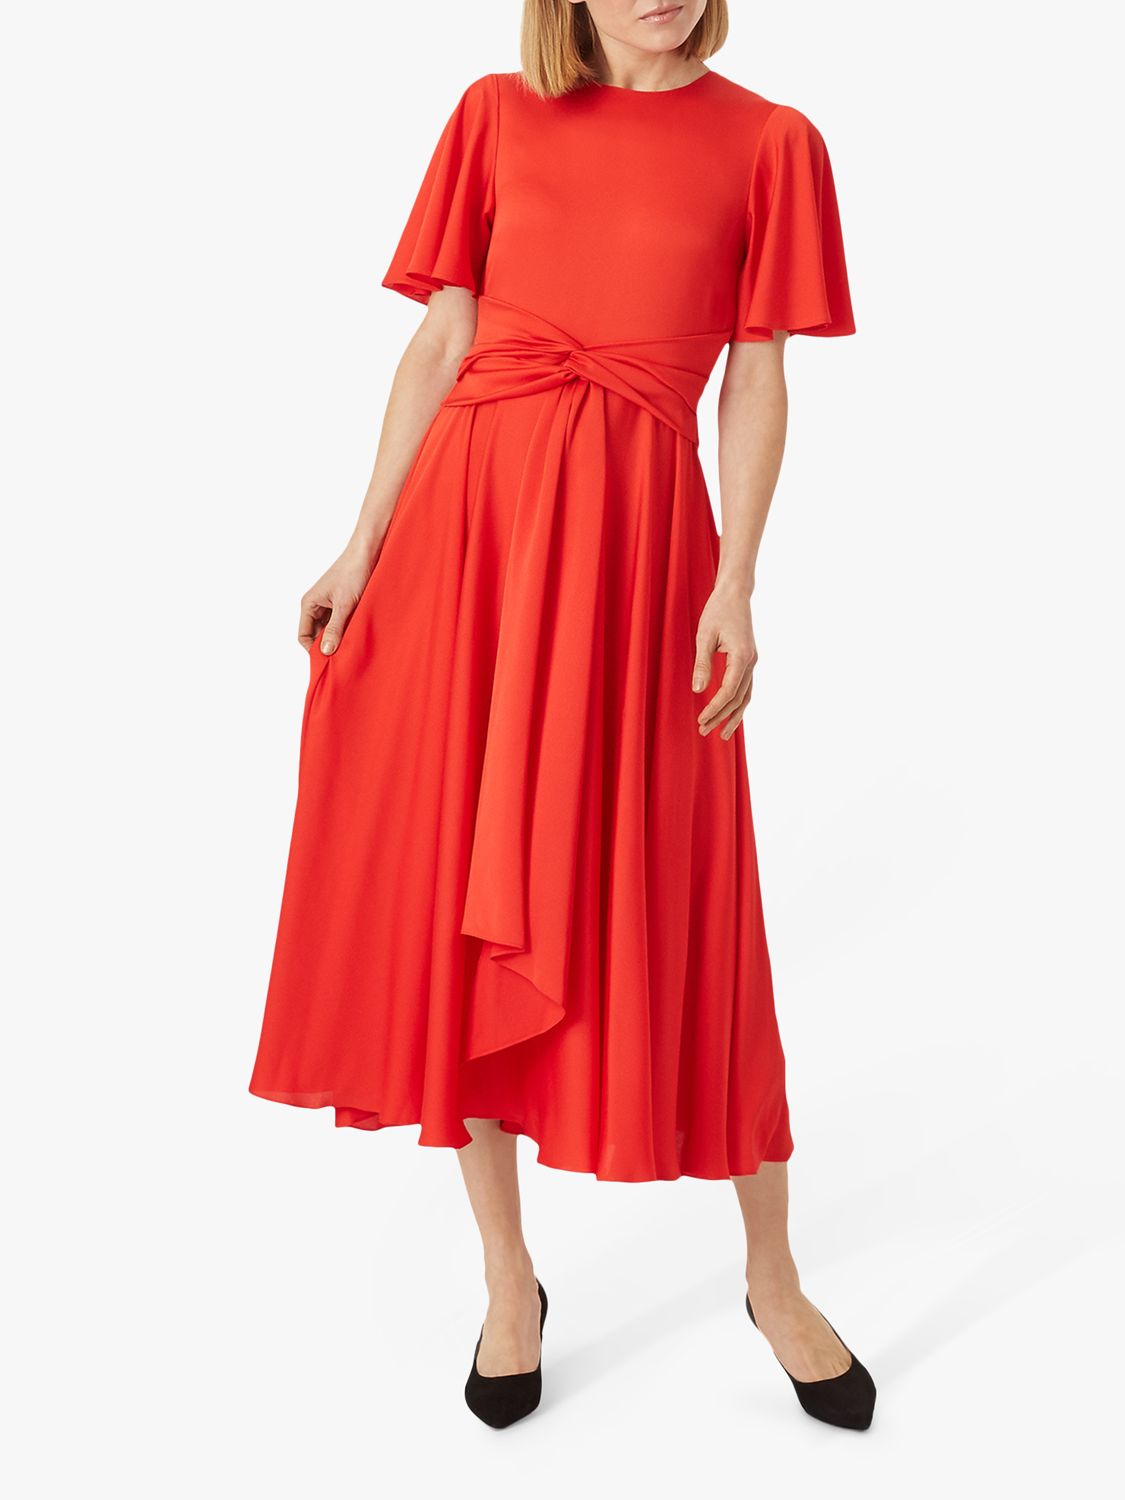 Hobbs Leia Midi Dress, Flame Red at John Lewis & Partners